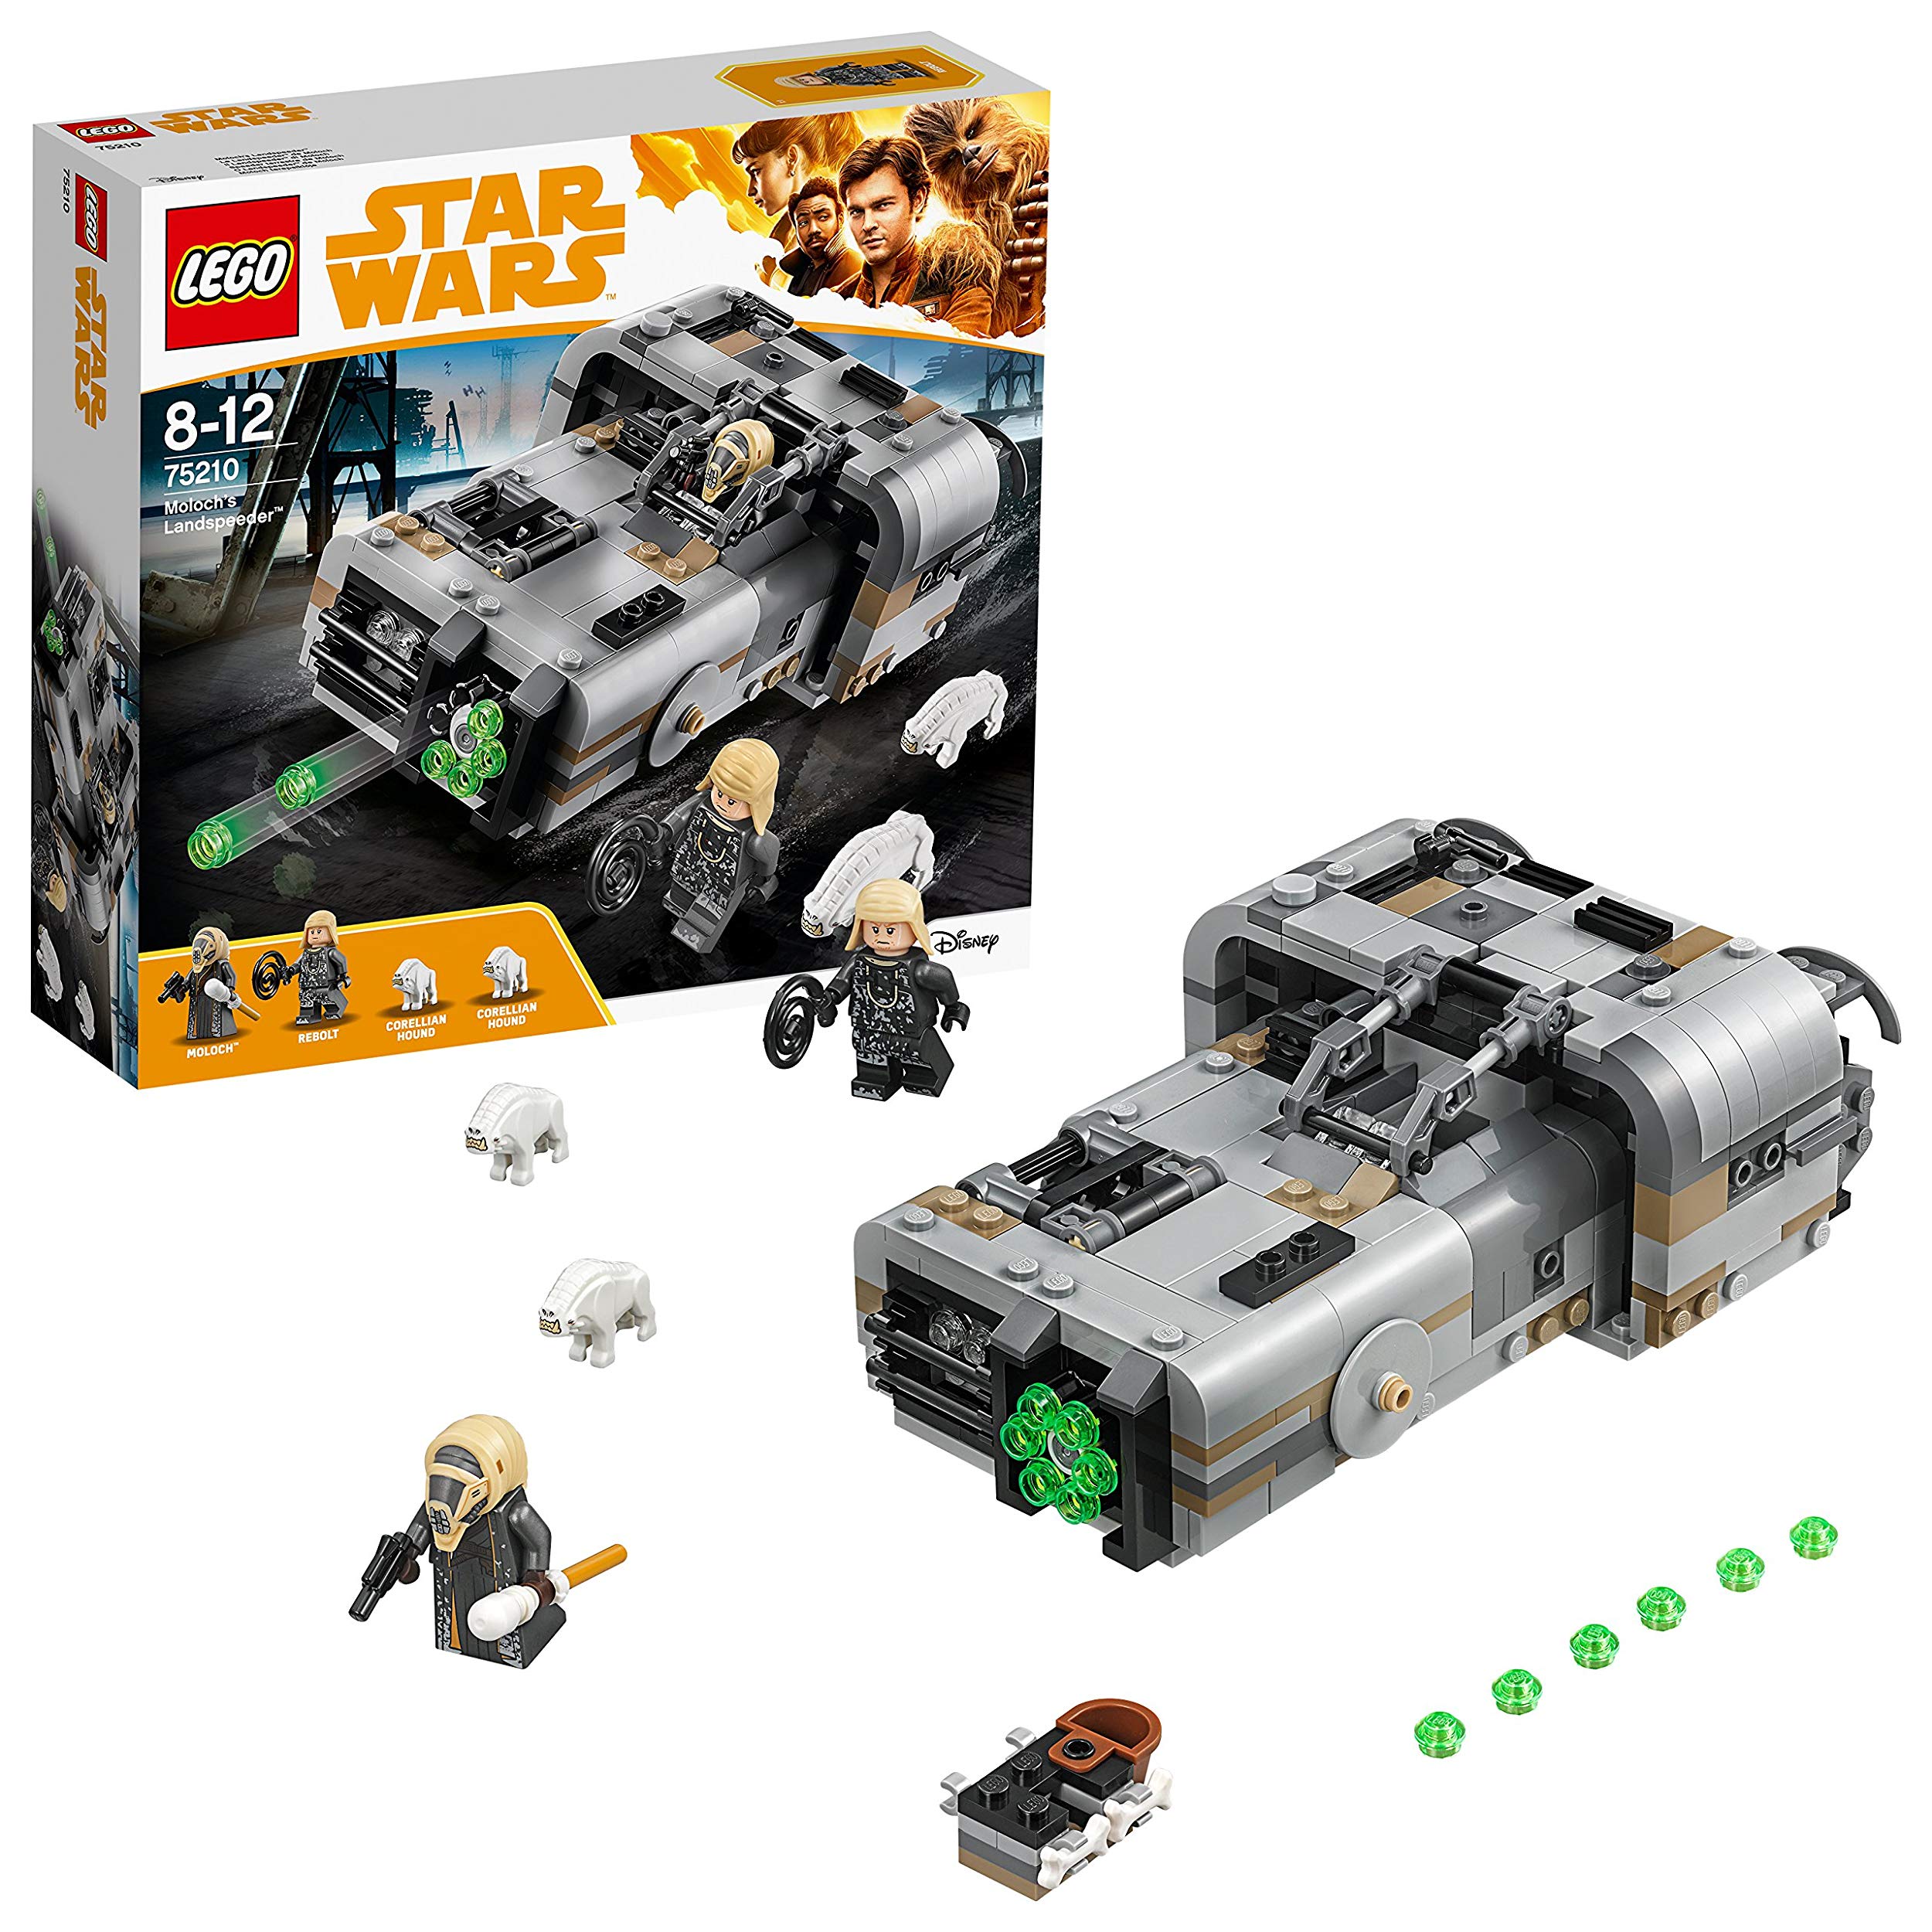 Lego Star Wars Molochs Landspeeder Star Wars Toy